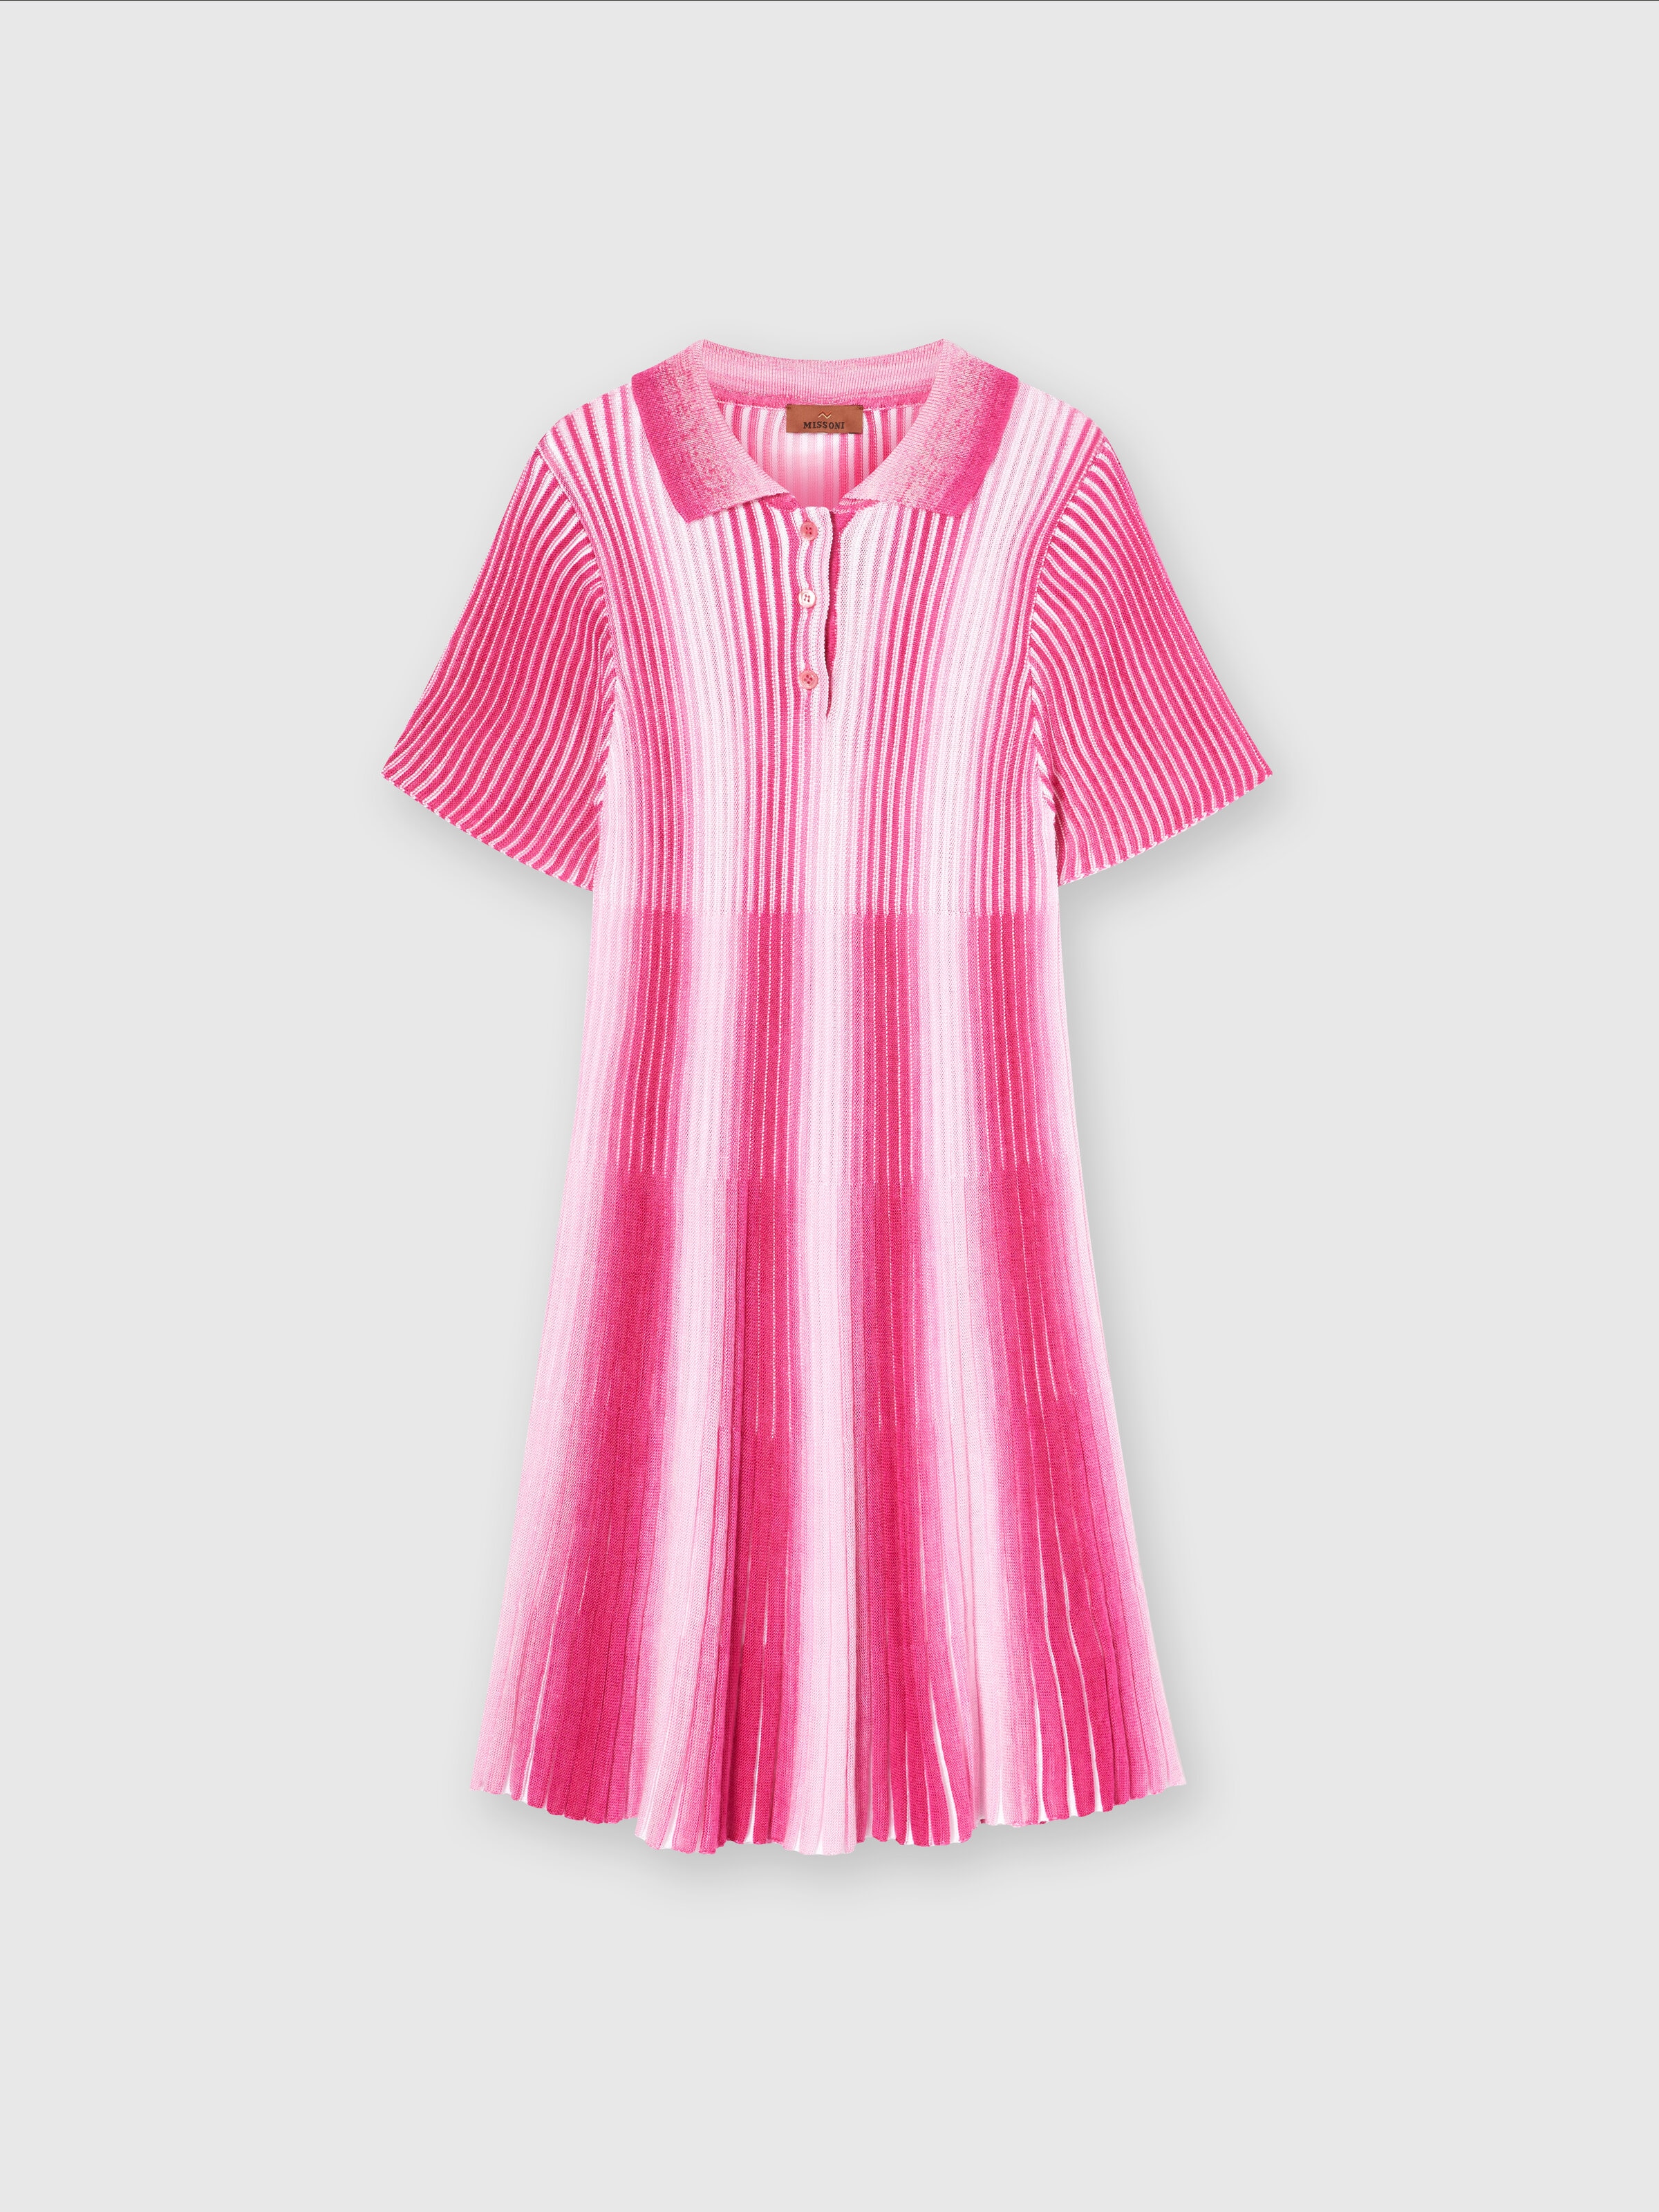 Midi dress in striped viscose knit, Pink   - 0